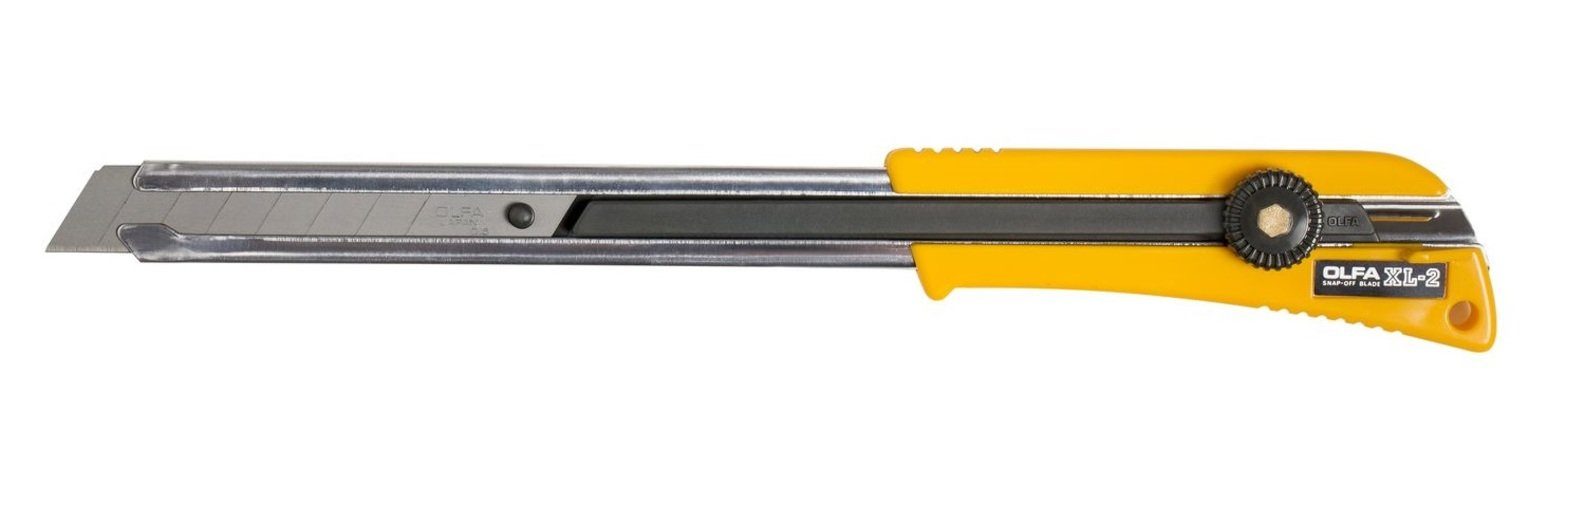 für extra Stellen Olfa erreichbare 18mm langer OLFA mit Cuttermesser Cutter Klinge XL-2 schwer